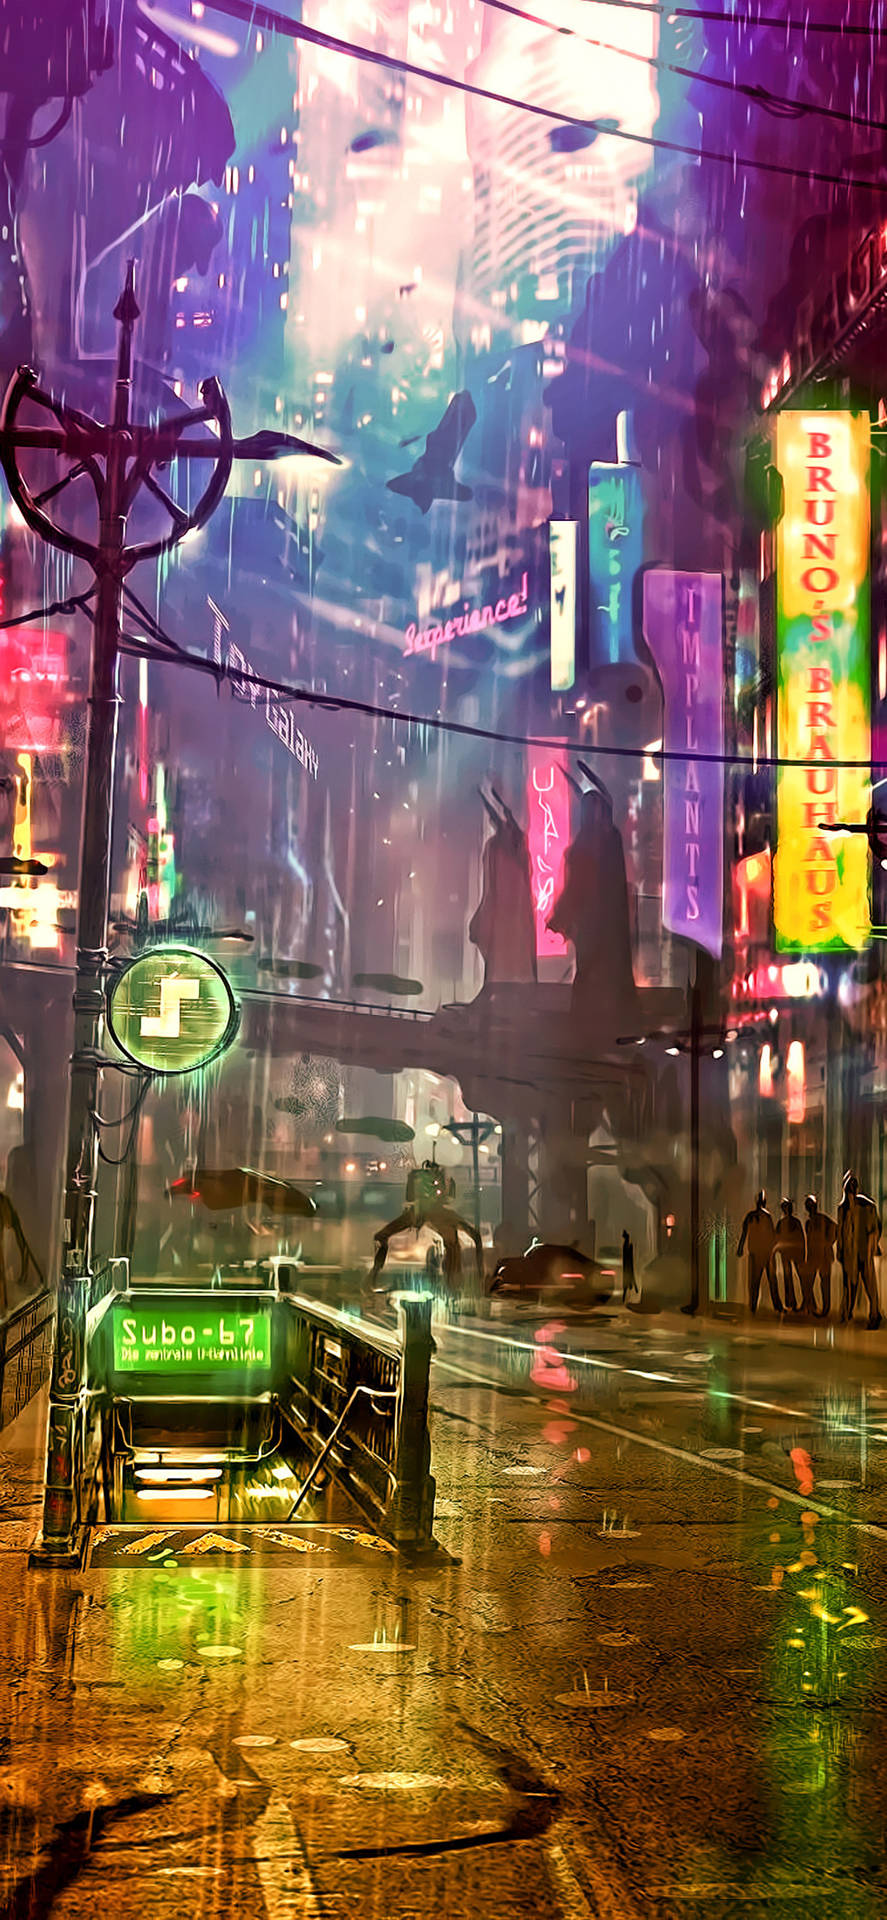 Futuristic City Artwork Cyberpunk Iphone X Wallpaper